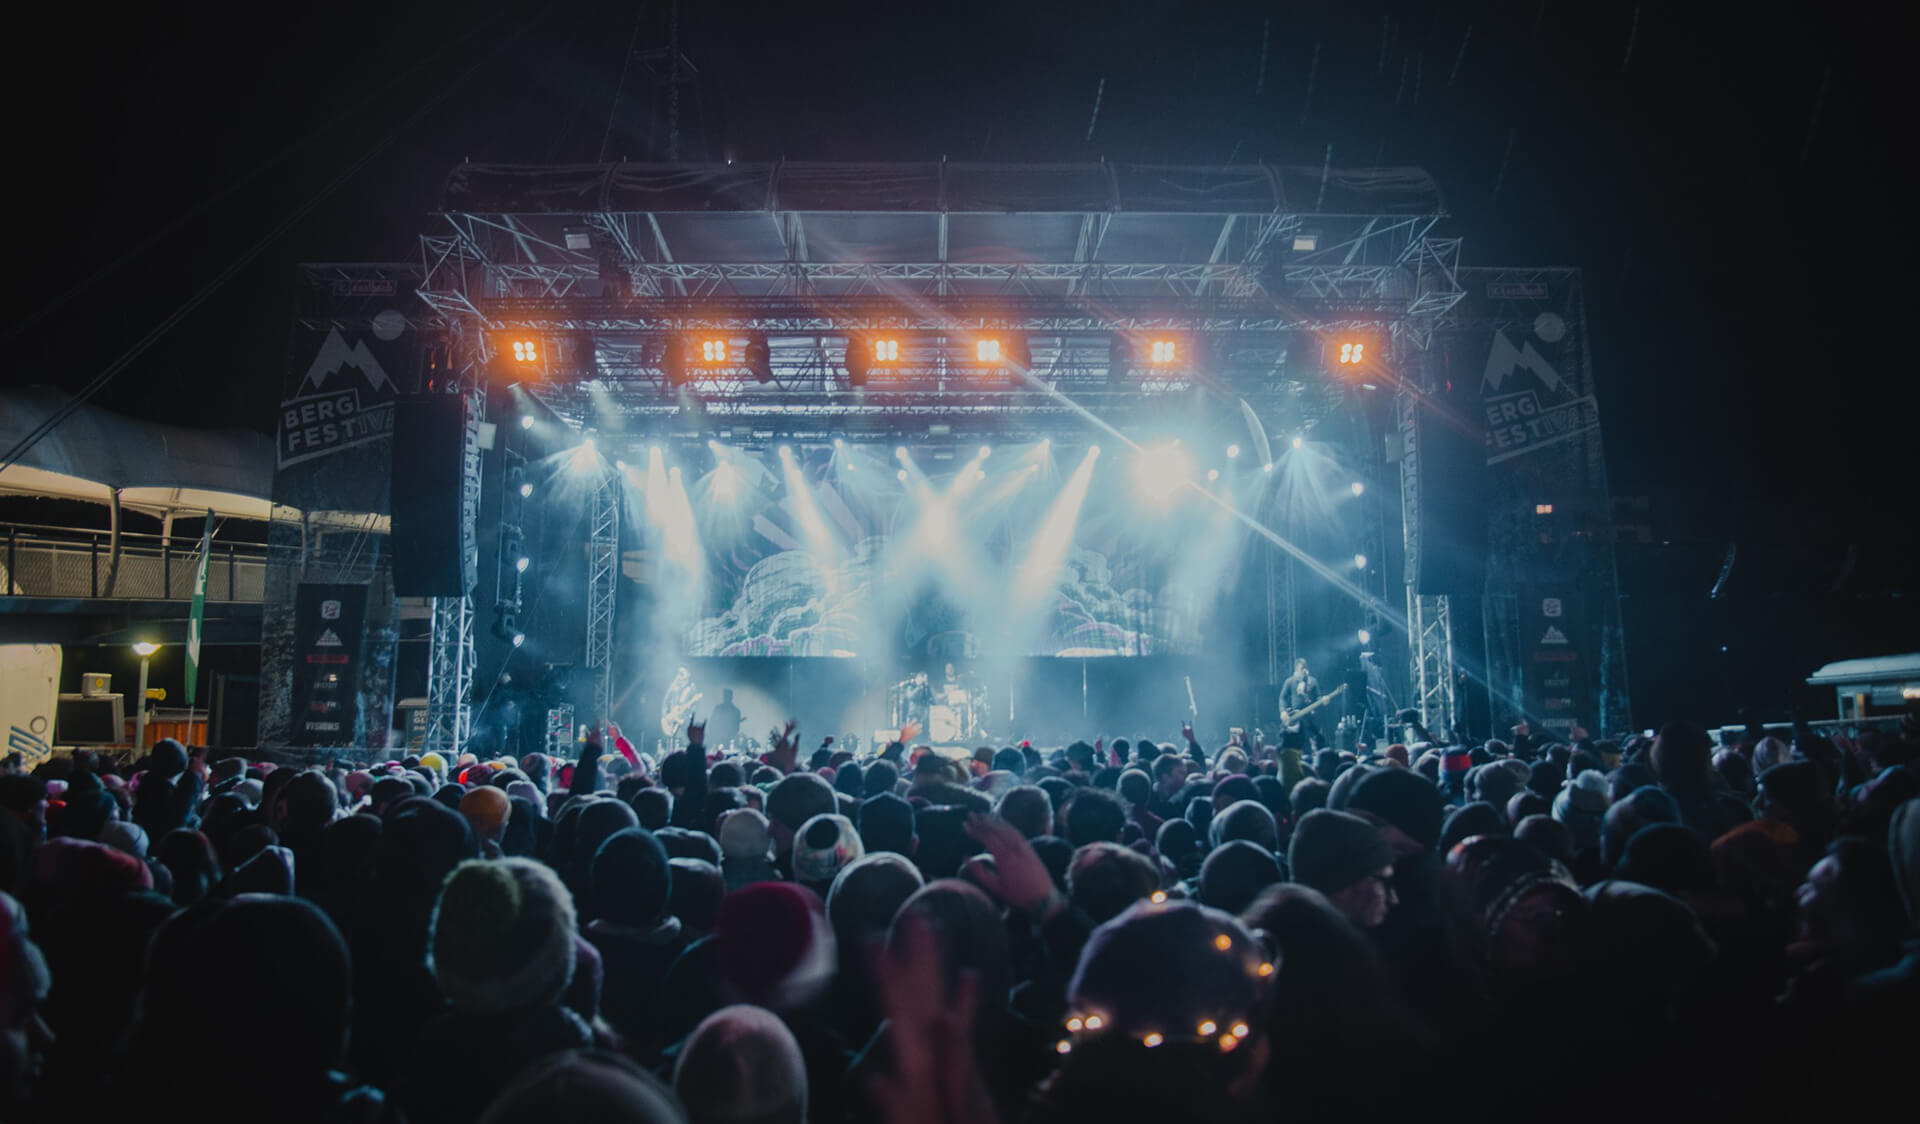 Besucher erleben ein nächtliches Konzert unter freiem Himmel mit dynamischer Bühnenbeleuchtung beim Bergfestival